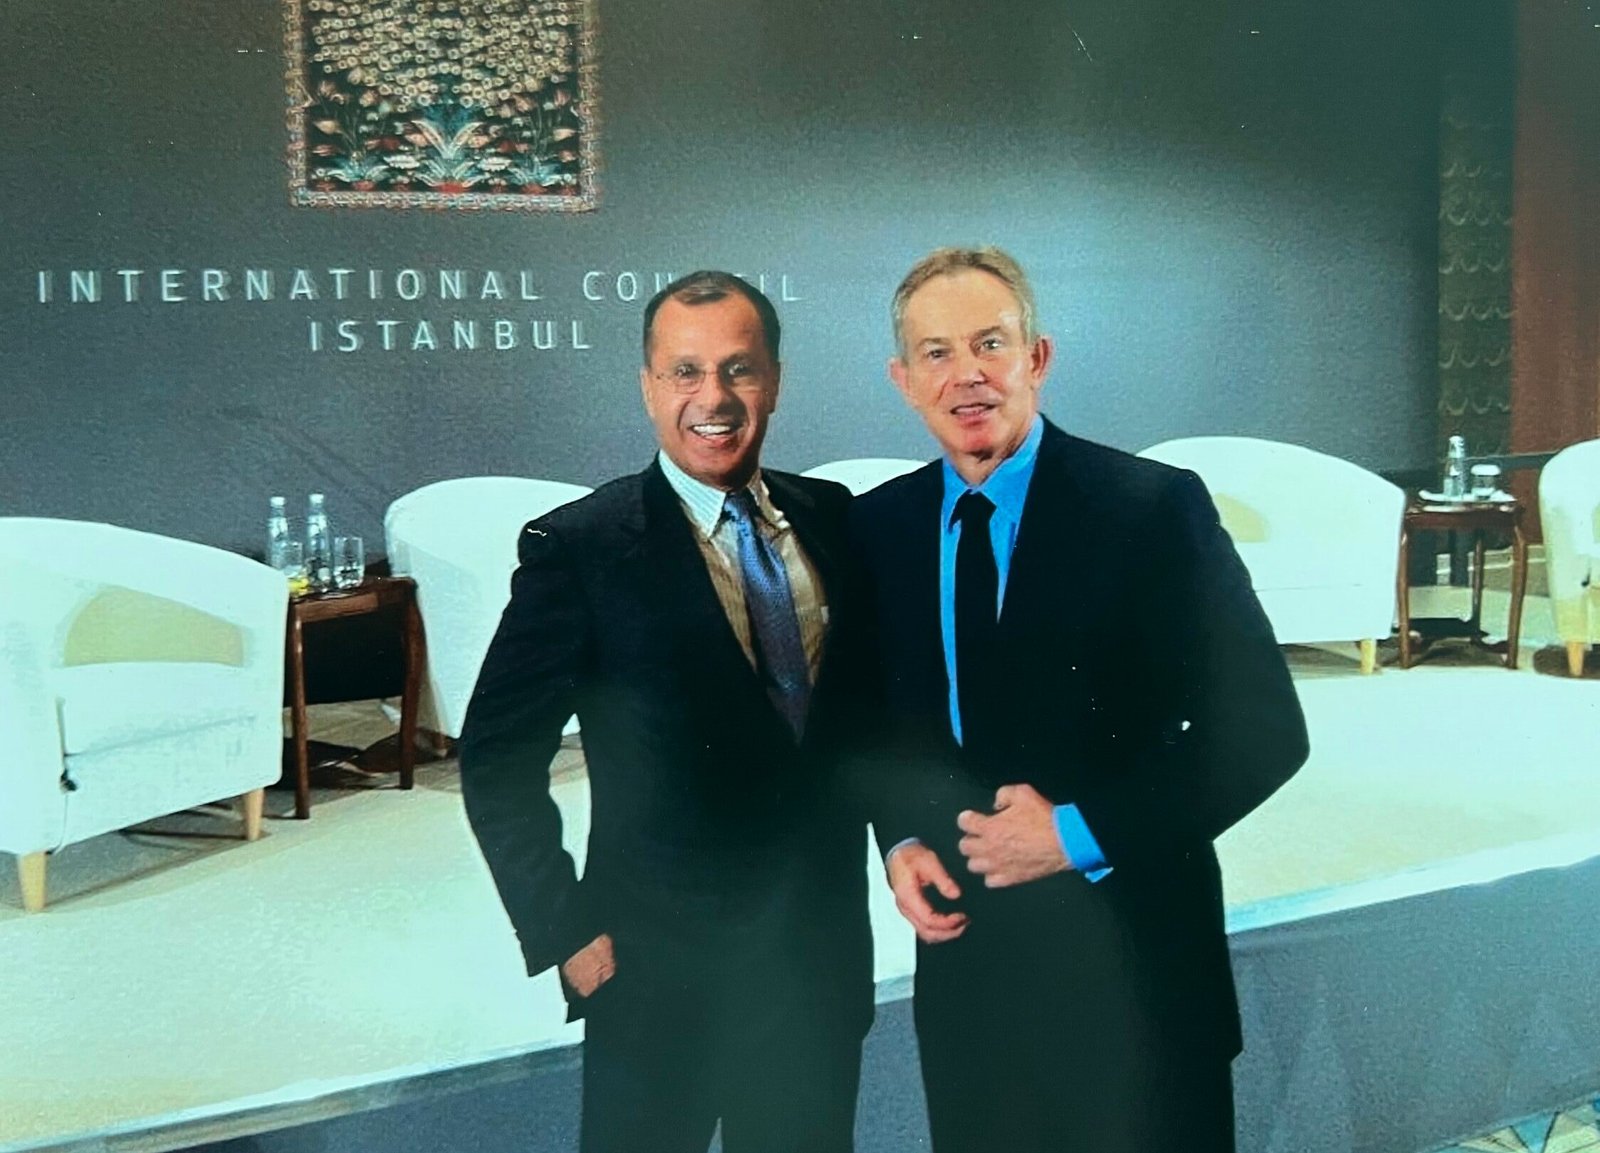 Sol Zakay meeting with Tony Blair